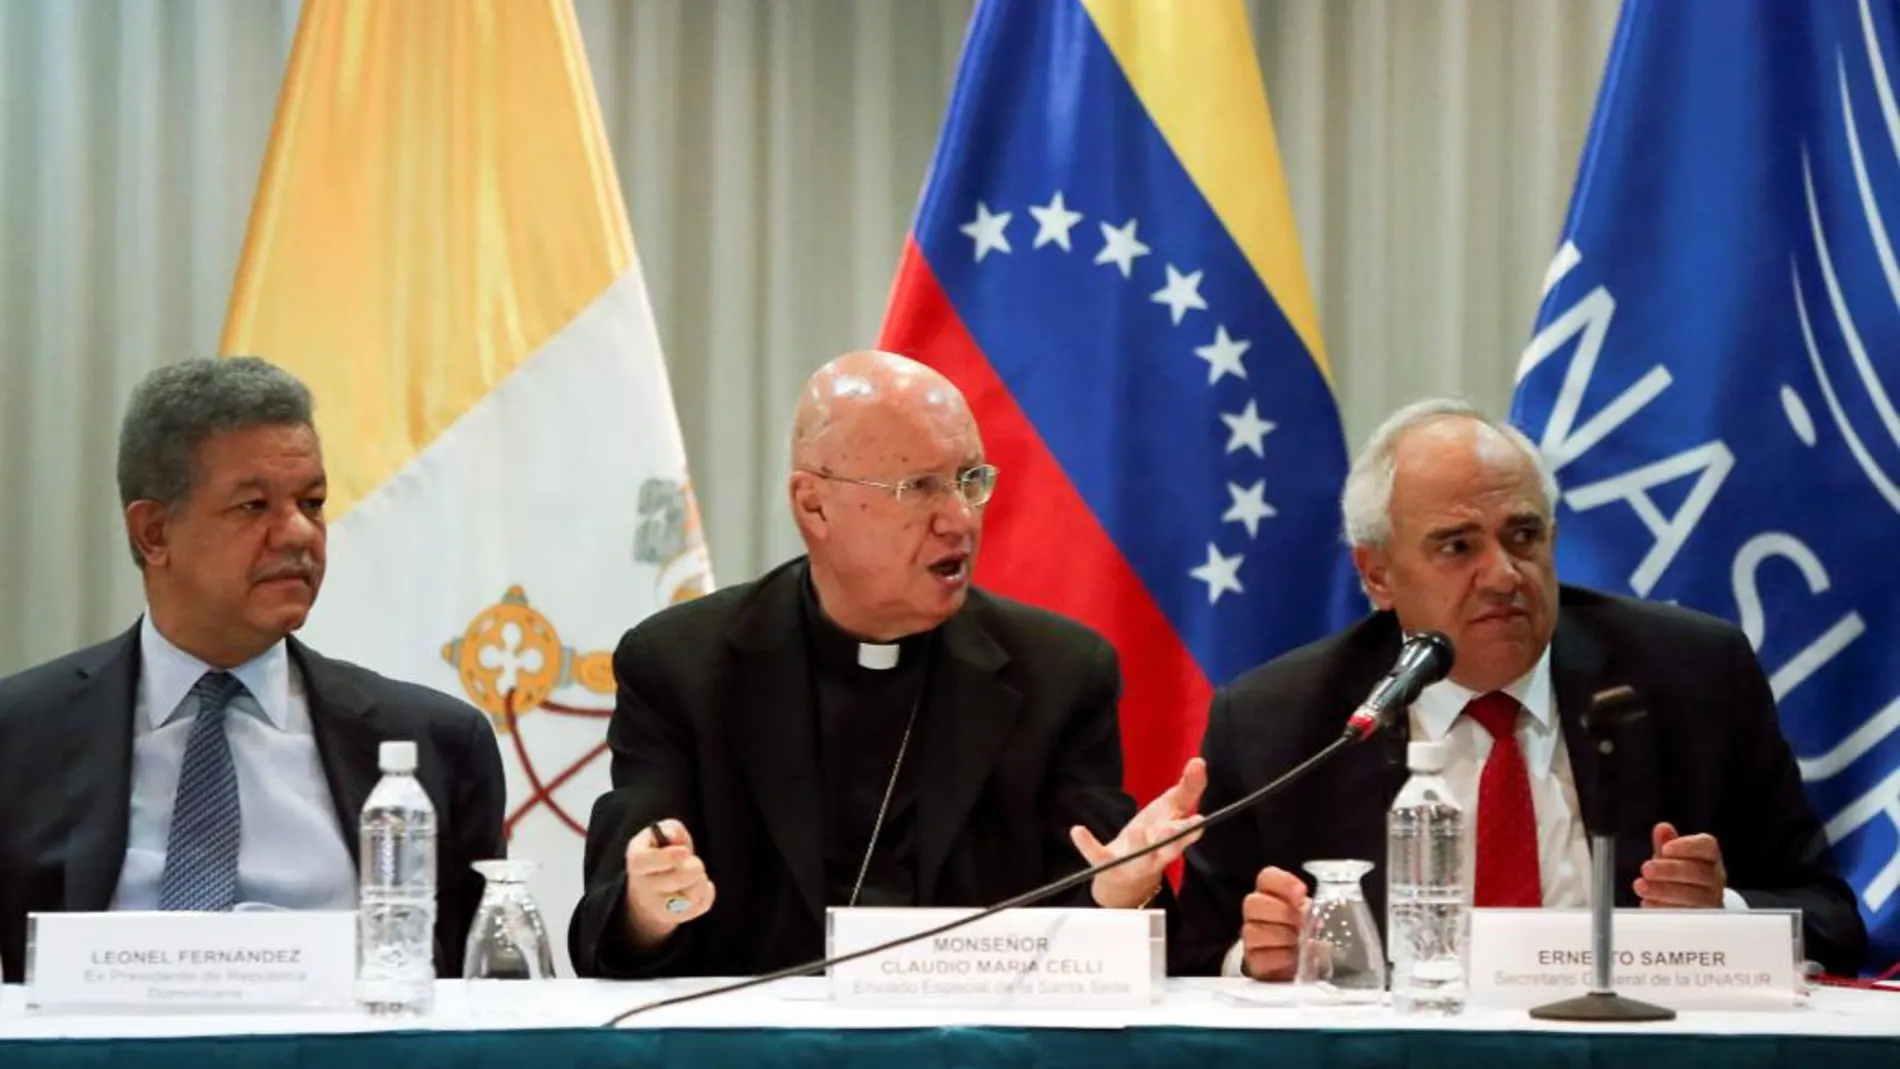 Monseñor Claudio Maria Celli, portavoz del Vaticano, habla entre el ex presidente dominicano Leonel Fernandez y Ernesto Samper.